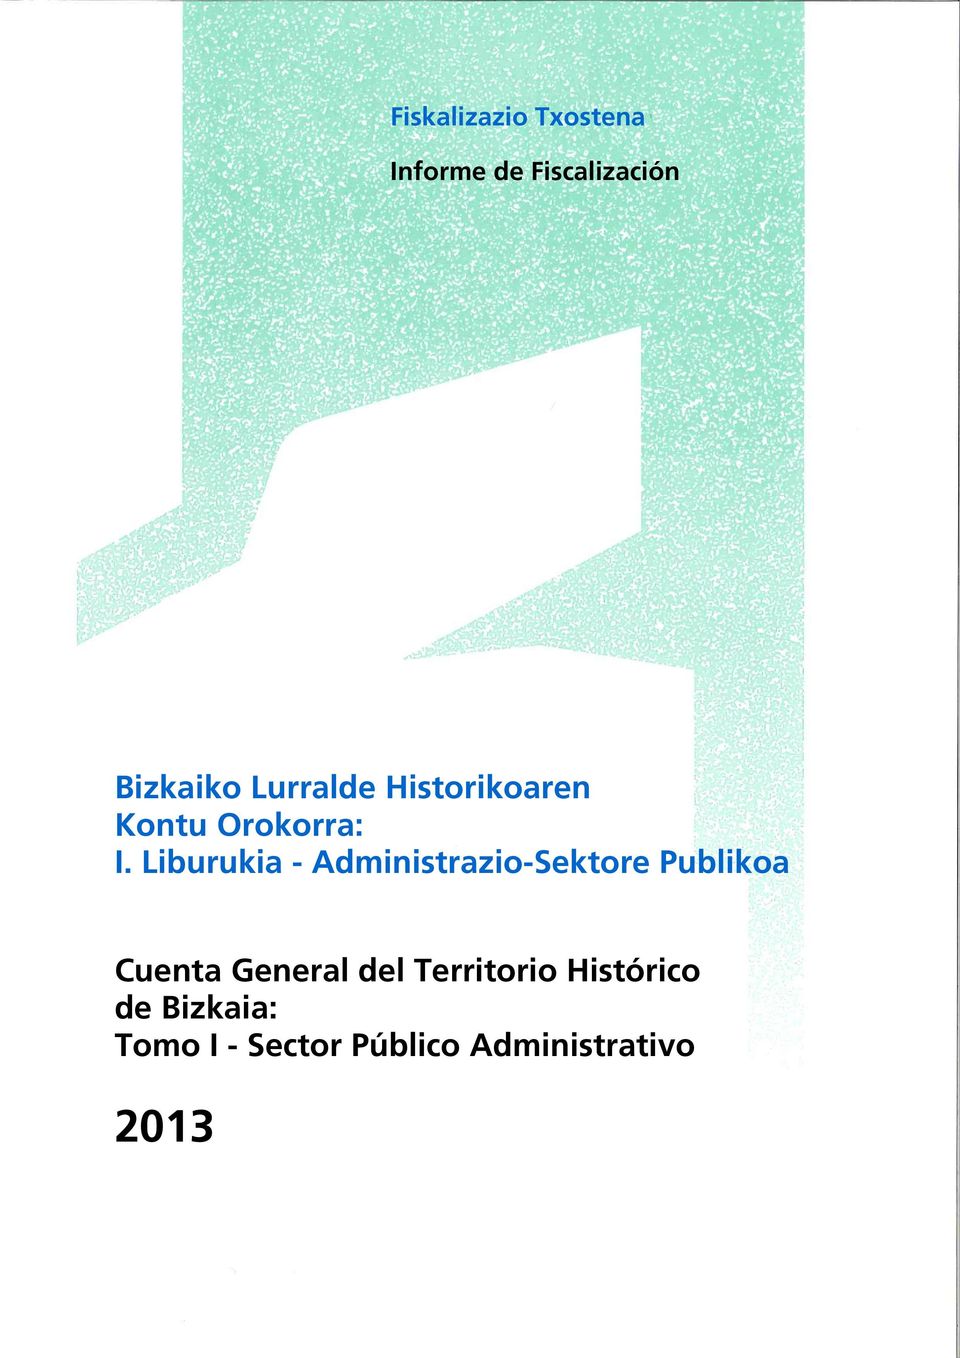 Liburukia - Administrazio-Sektore Publikoa Cuenta General